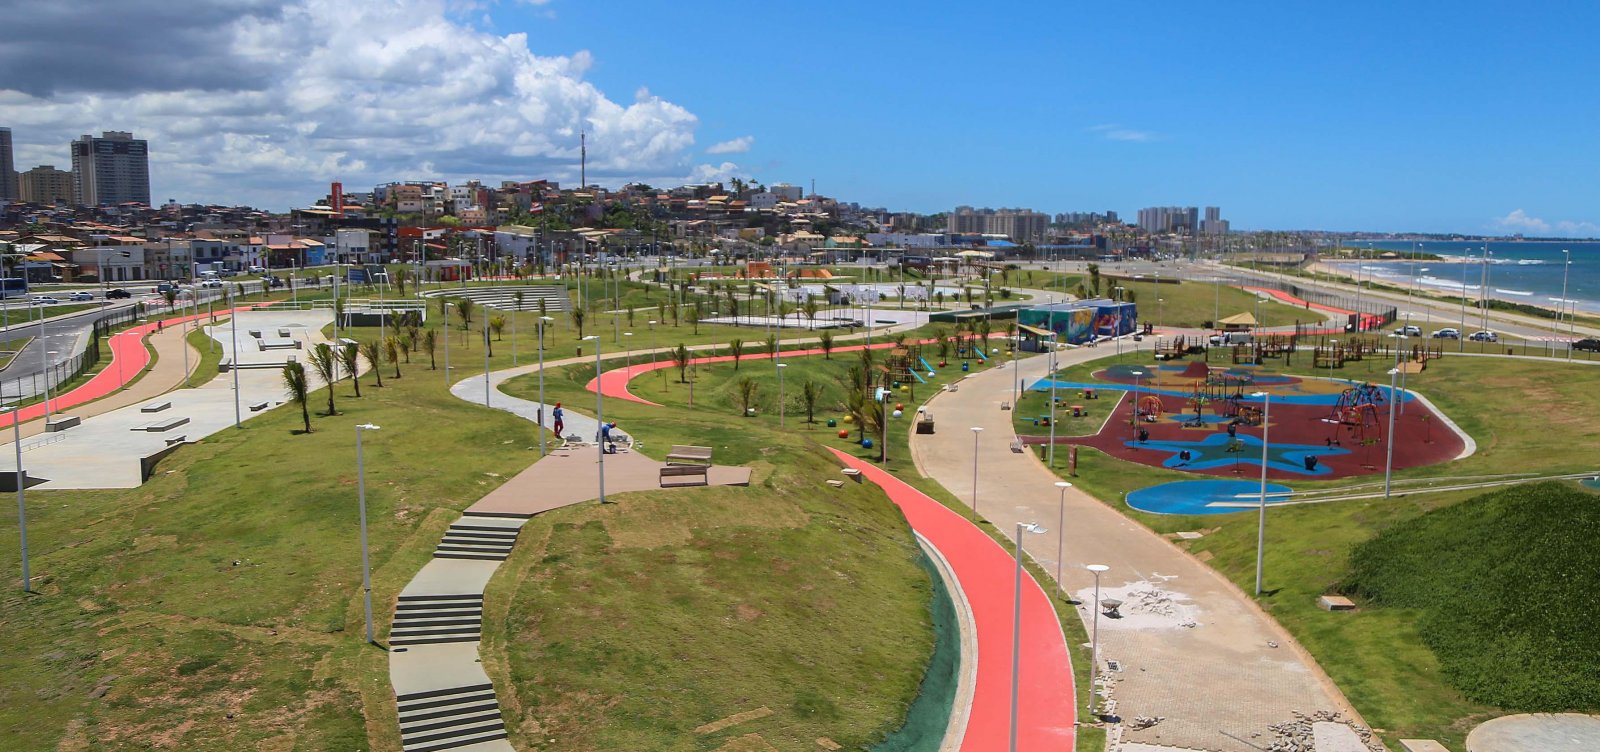 Prefeitura libera parques públicos municipais e praças interditadas em Salvador